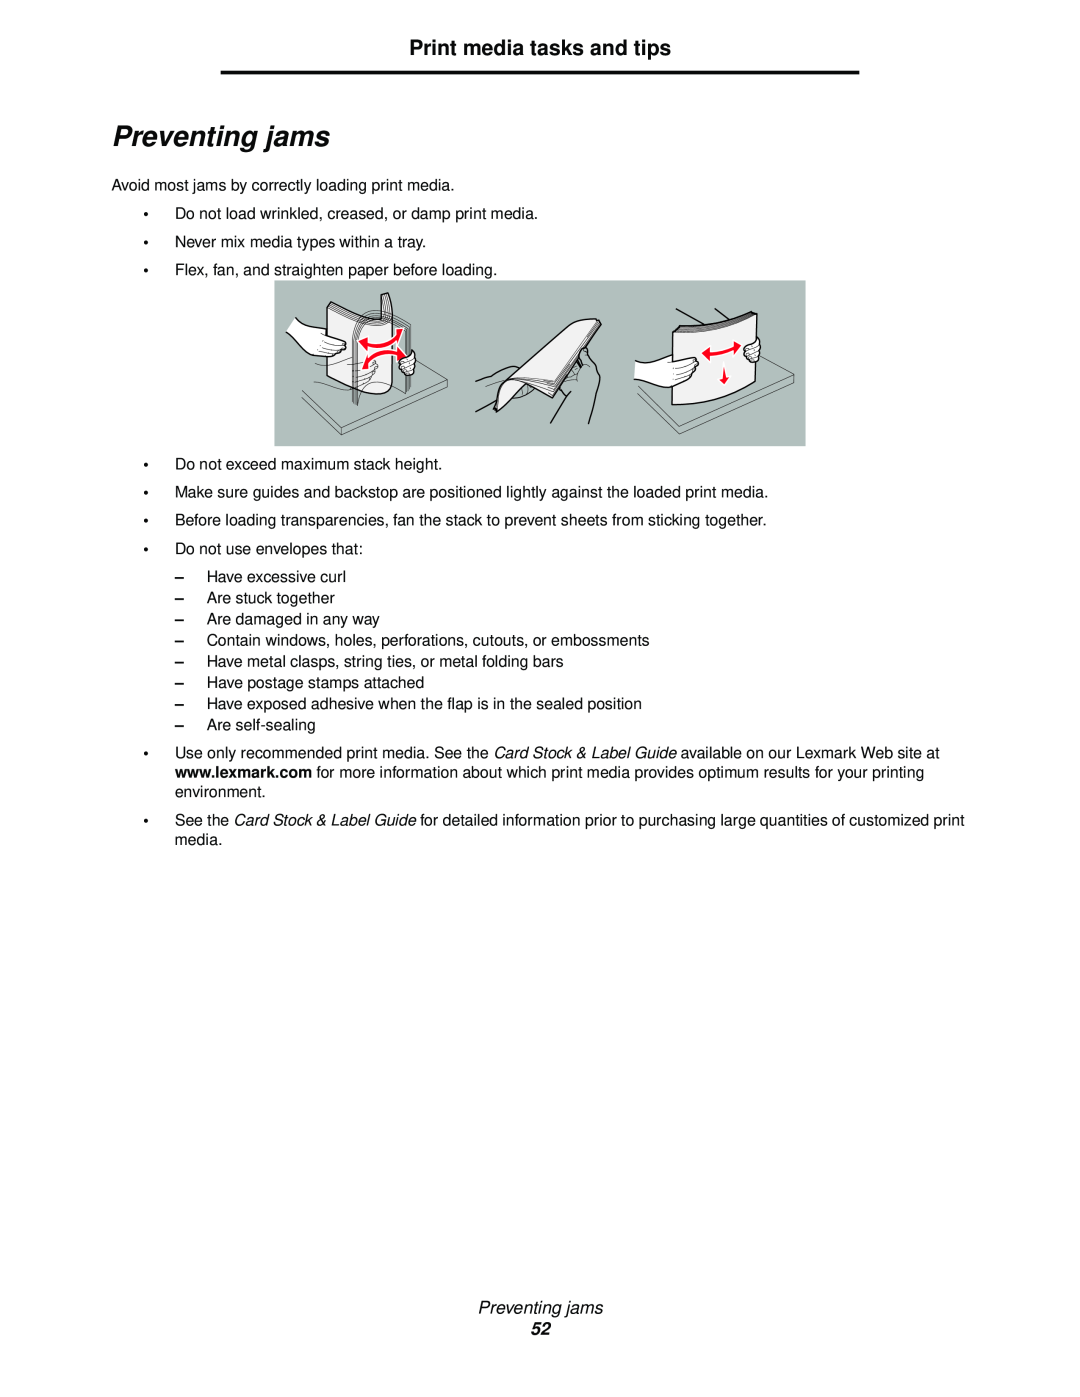 Lexmark 120 manual Preventing jams, Print media tasks and tips 